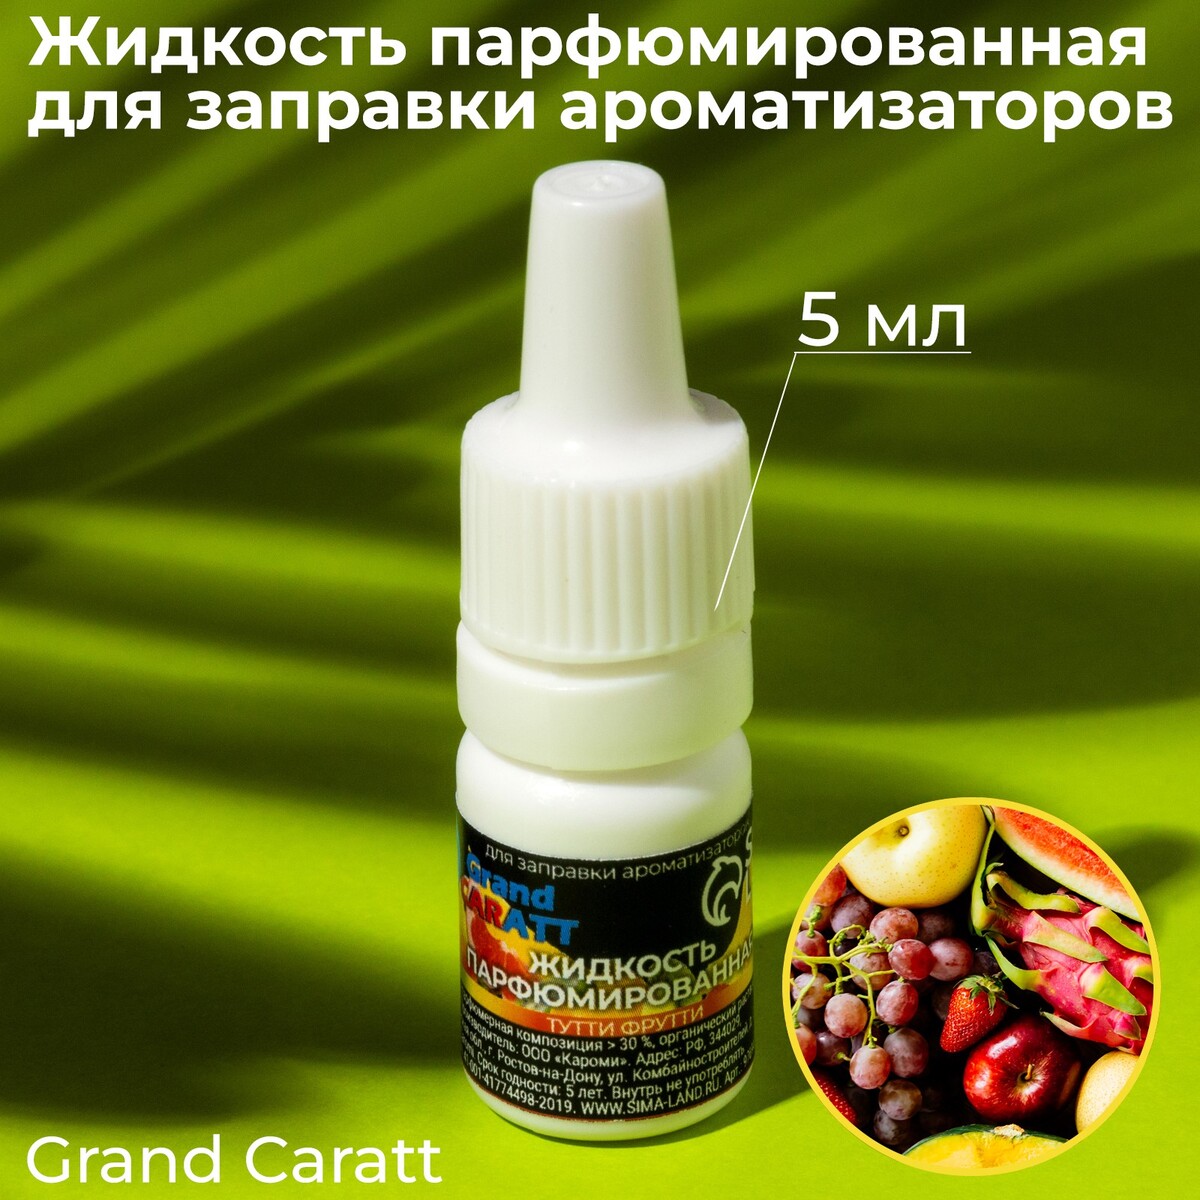 Жидкость парфюмированная grand caratt, для заправки ароматизаторов, тутти-фрутти, 5 мл жидкость парфюмированная grand caratt для заправки ароматизаторов апельсин 5 мл